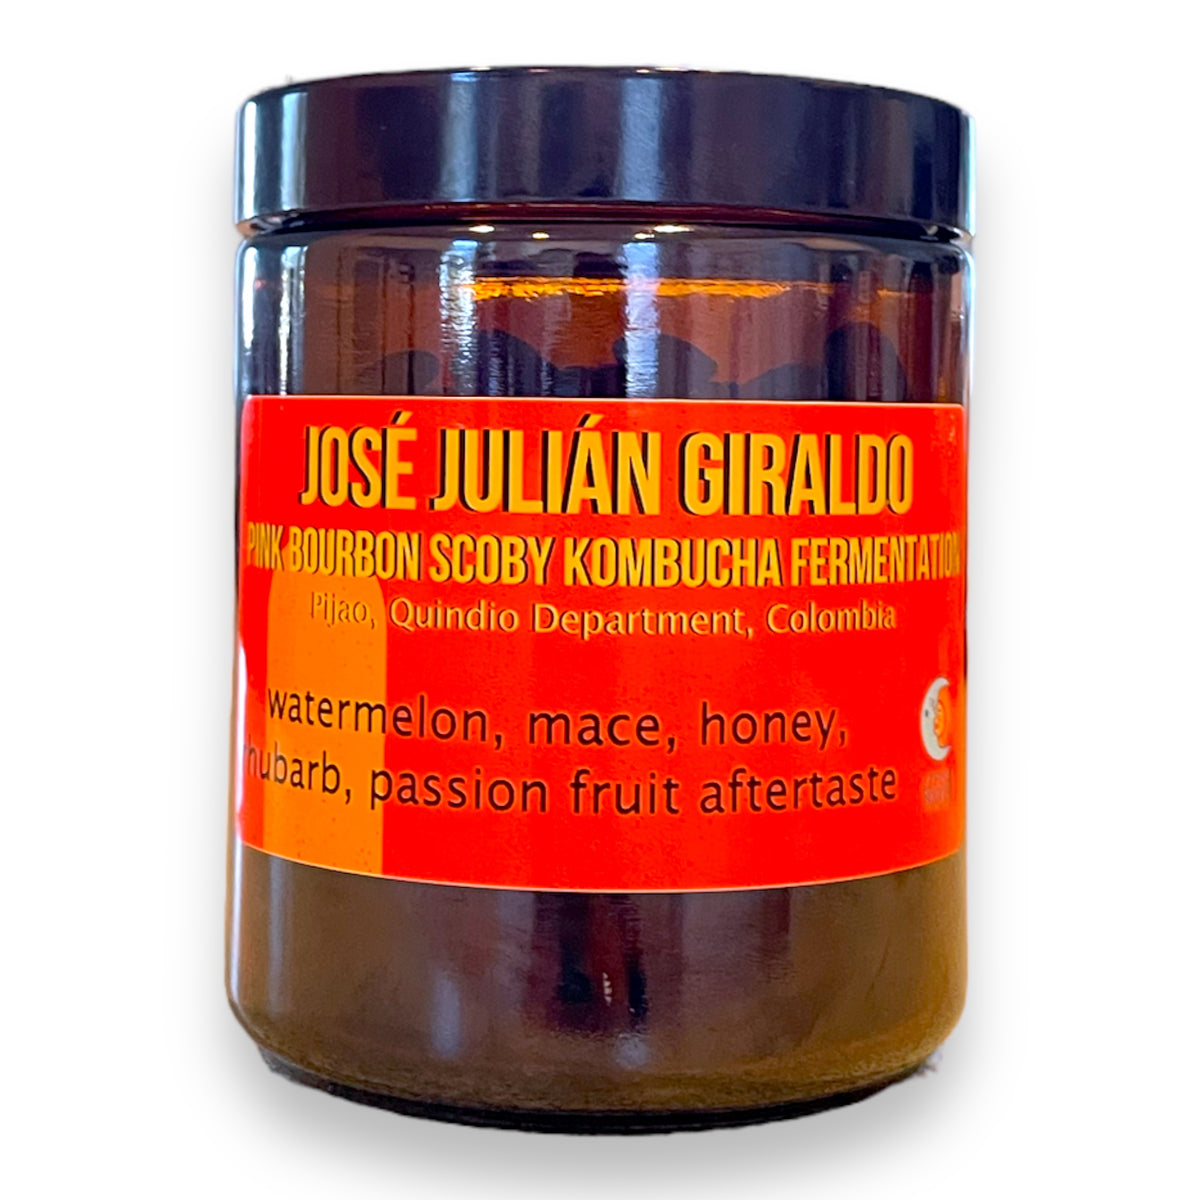 José Julián Giraldo- Pink Bourbon Scoby Kombucha Fermentation - Colomb –  Little Waves Coffee Roasters